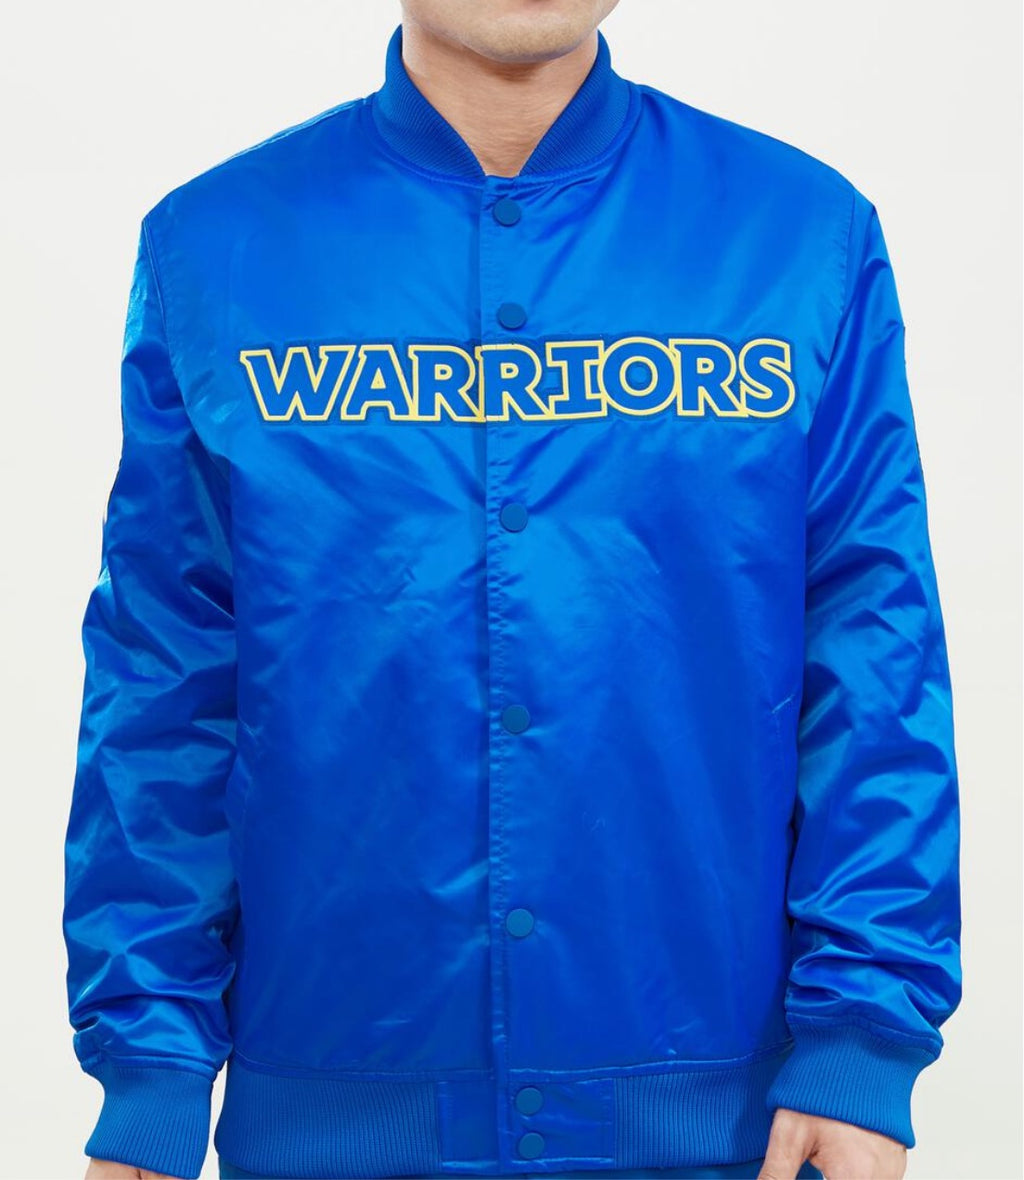 Pro Standard Golden State Warriors Jacket – Unleashed Streetwear